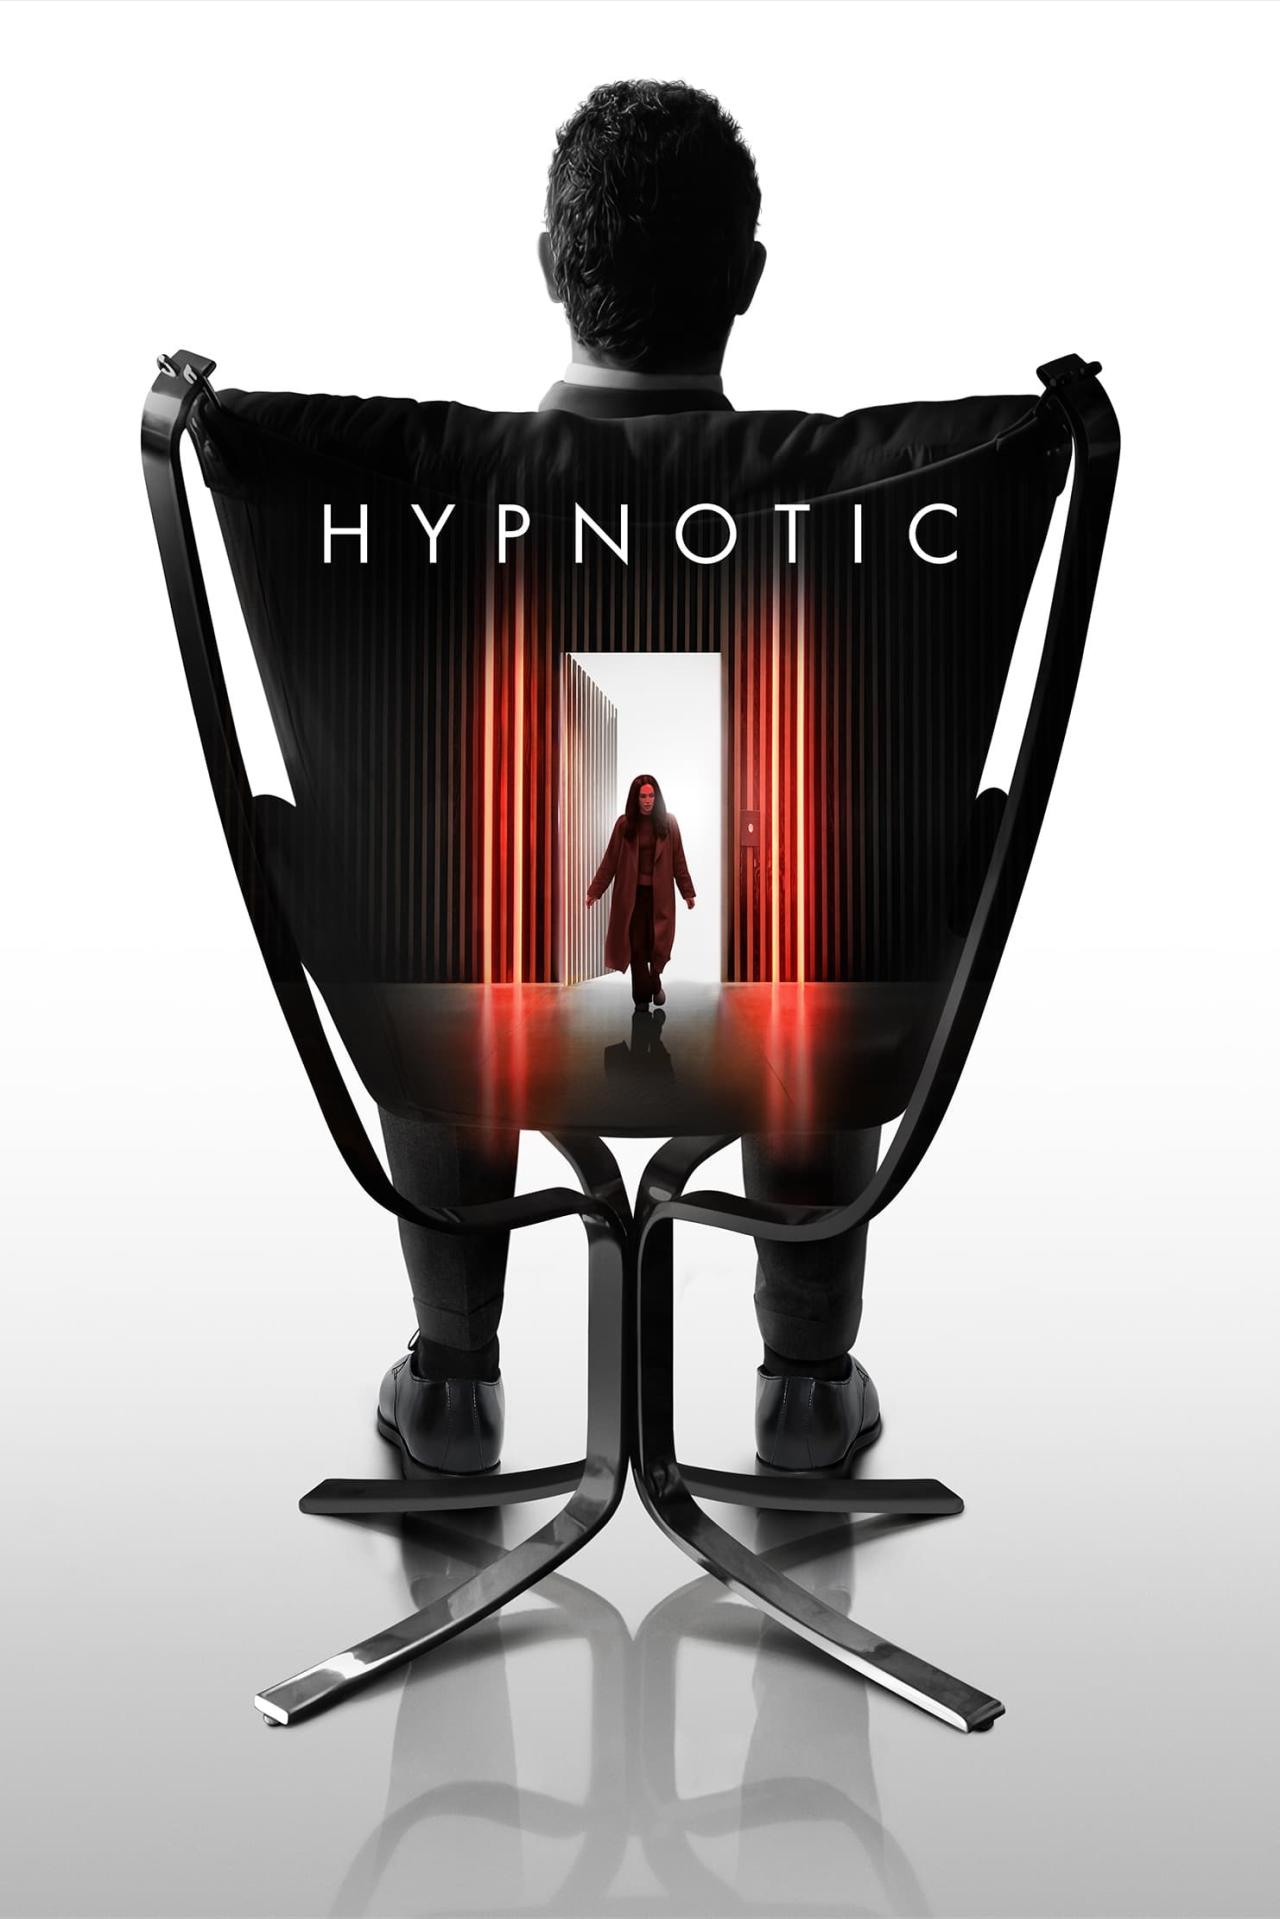 Affiche du film Hypnotic